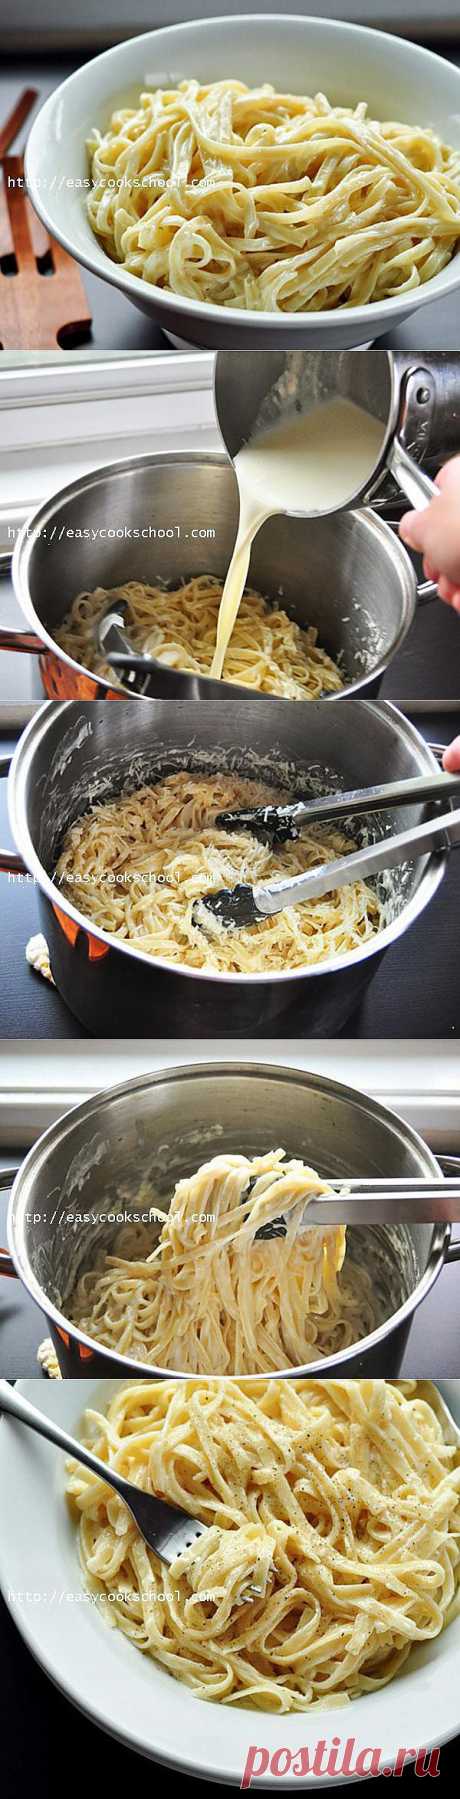 Как приготовить макароны с сыром | Легкие рецепты